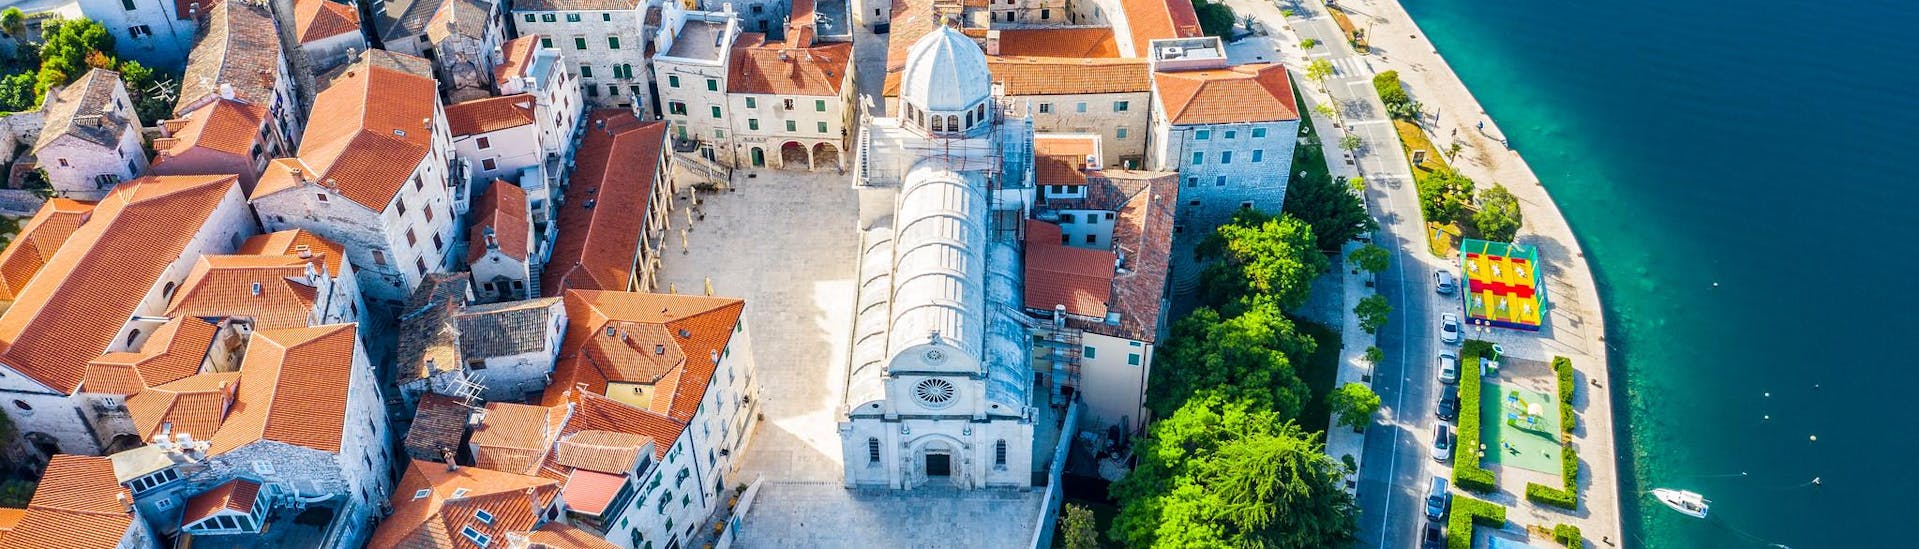 Aerial view of the city of Sibenik in Croatia.